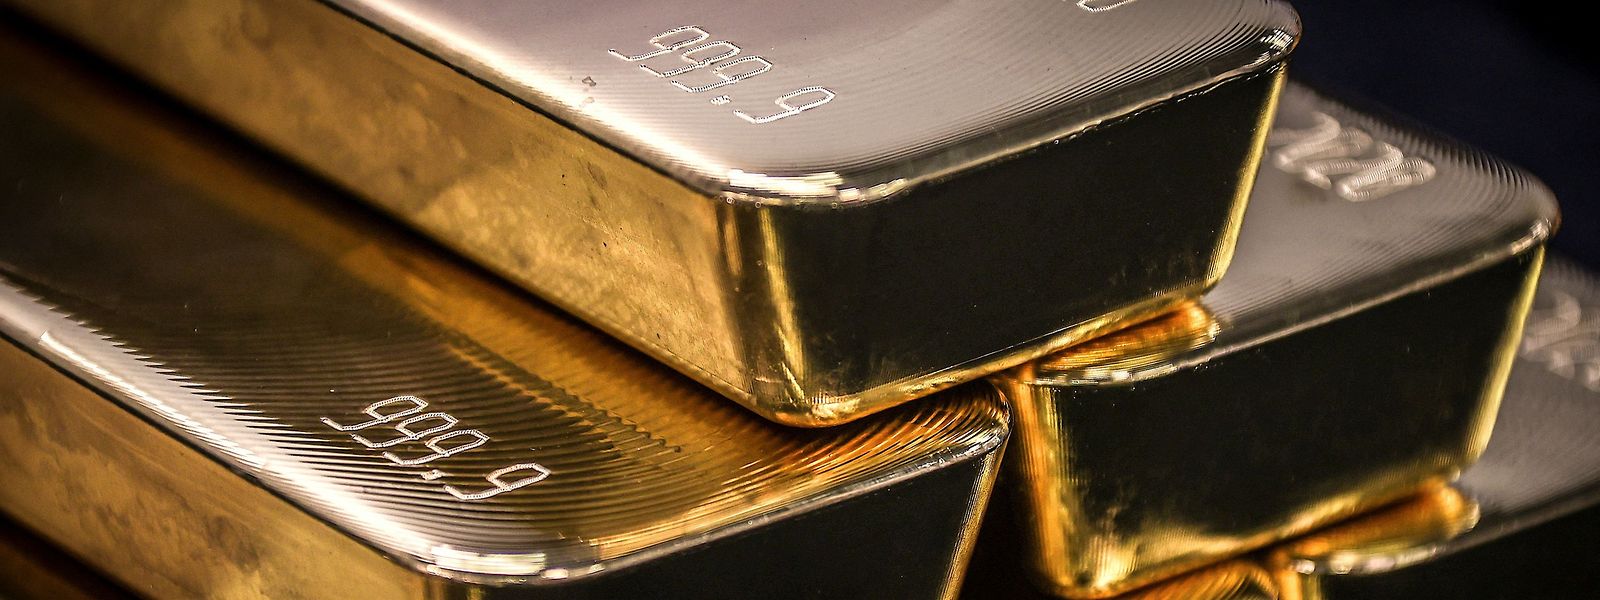 Russland ist hinter China der weltweit zweitgrößte Goldproduzent mit etwa zehn Prozent der weltweiten Minenproduktion. Russische Oligarchen haben zuletzt viel Gold gekauft, wohl um so Sanktionen zu umgehen. 